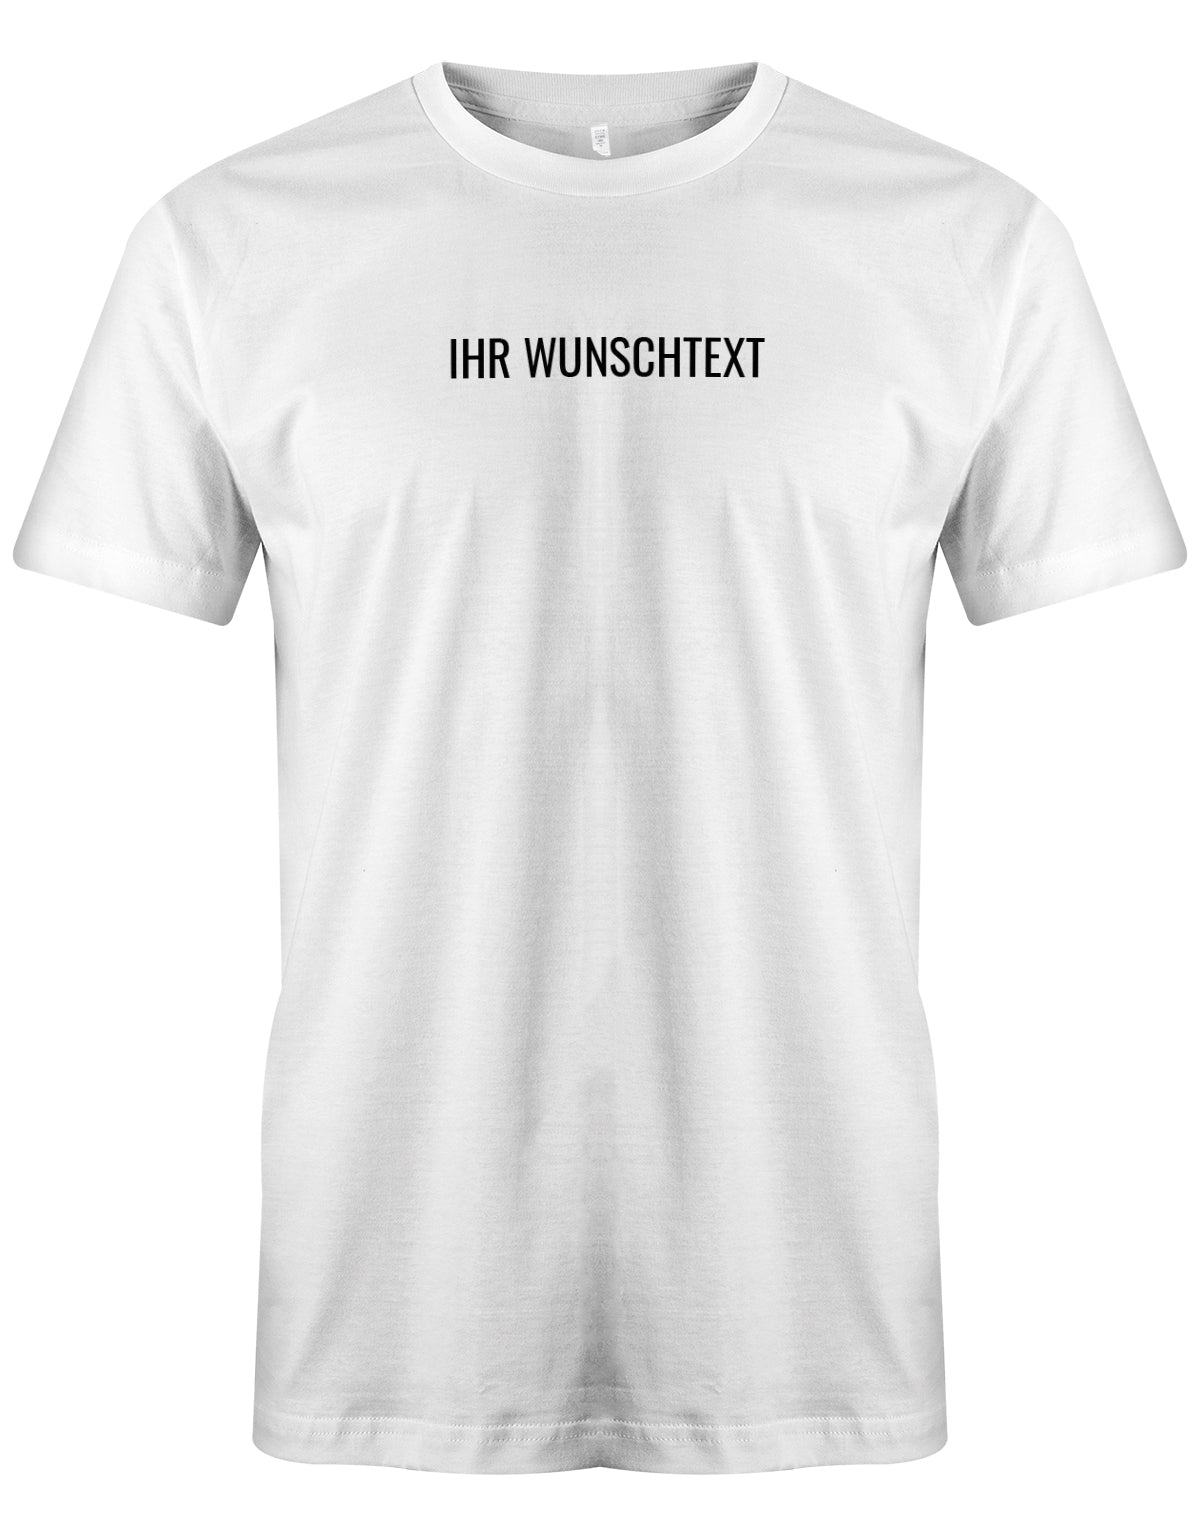 Männer Tshirt mit Wunschtext. Minimalistisches Design. Weiss